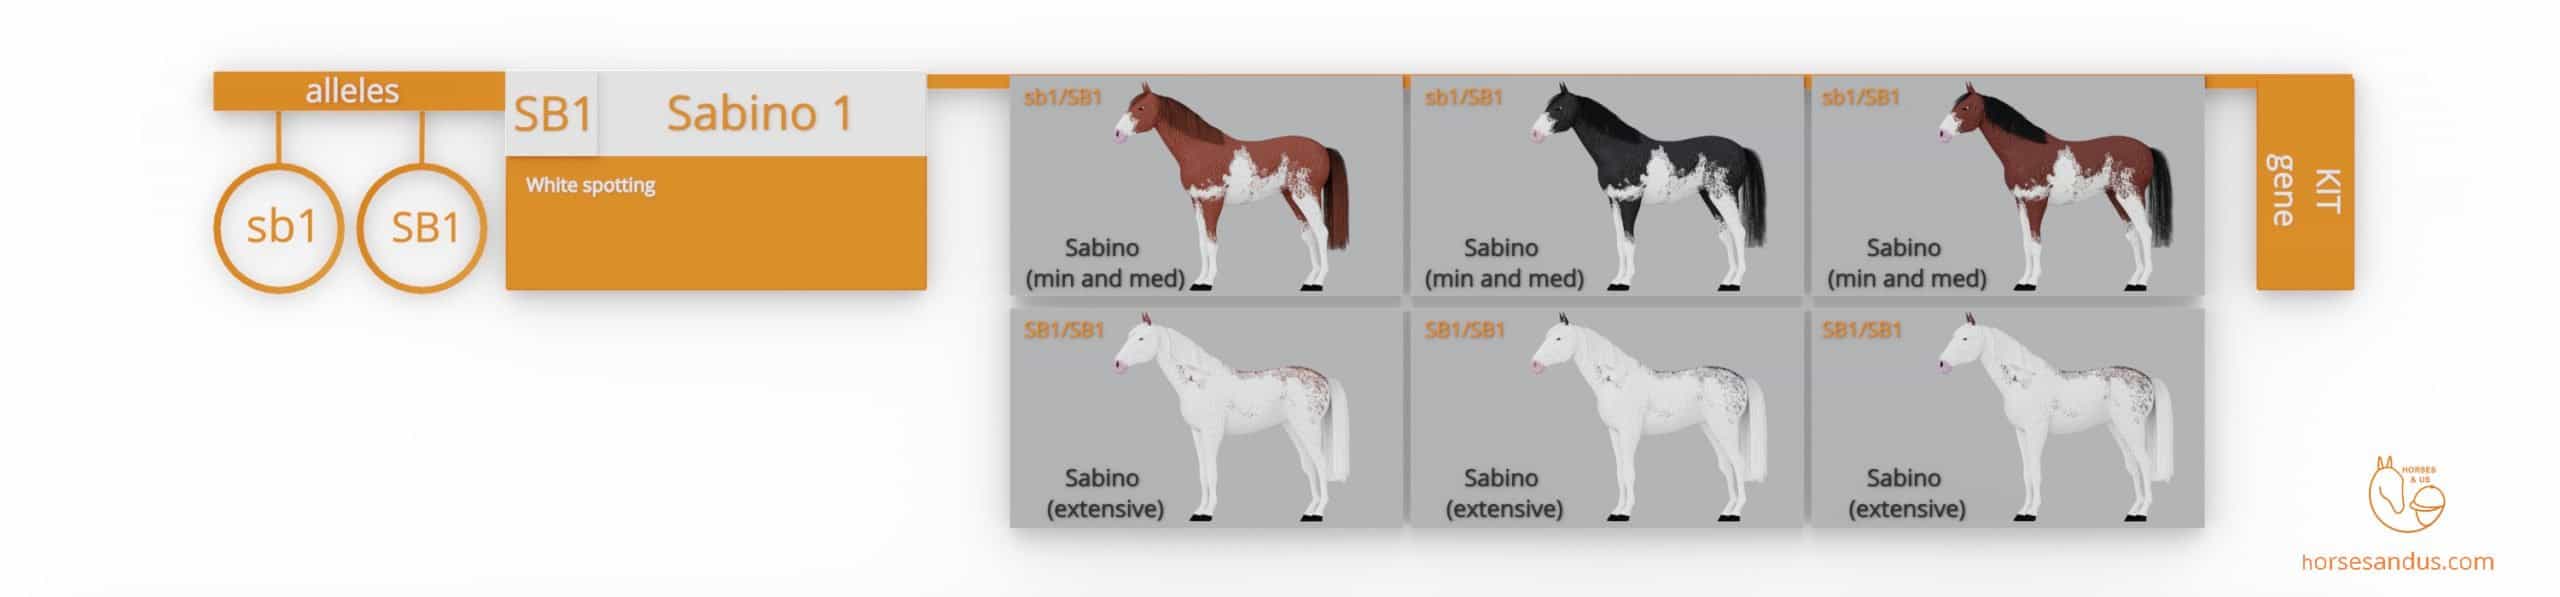 Sabino horse genes